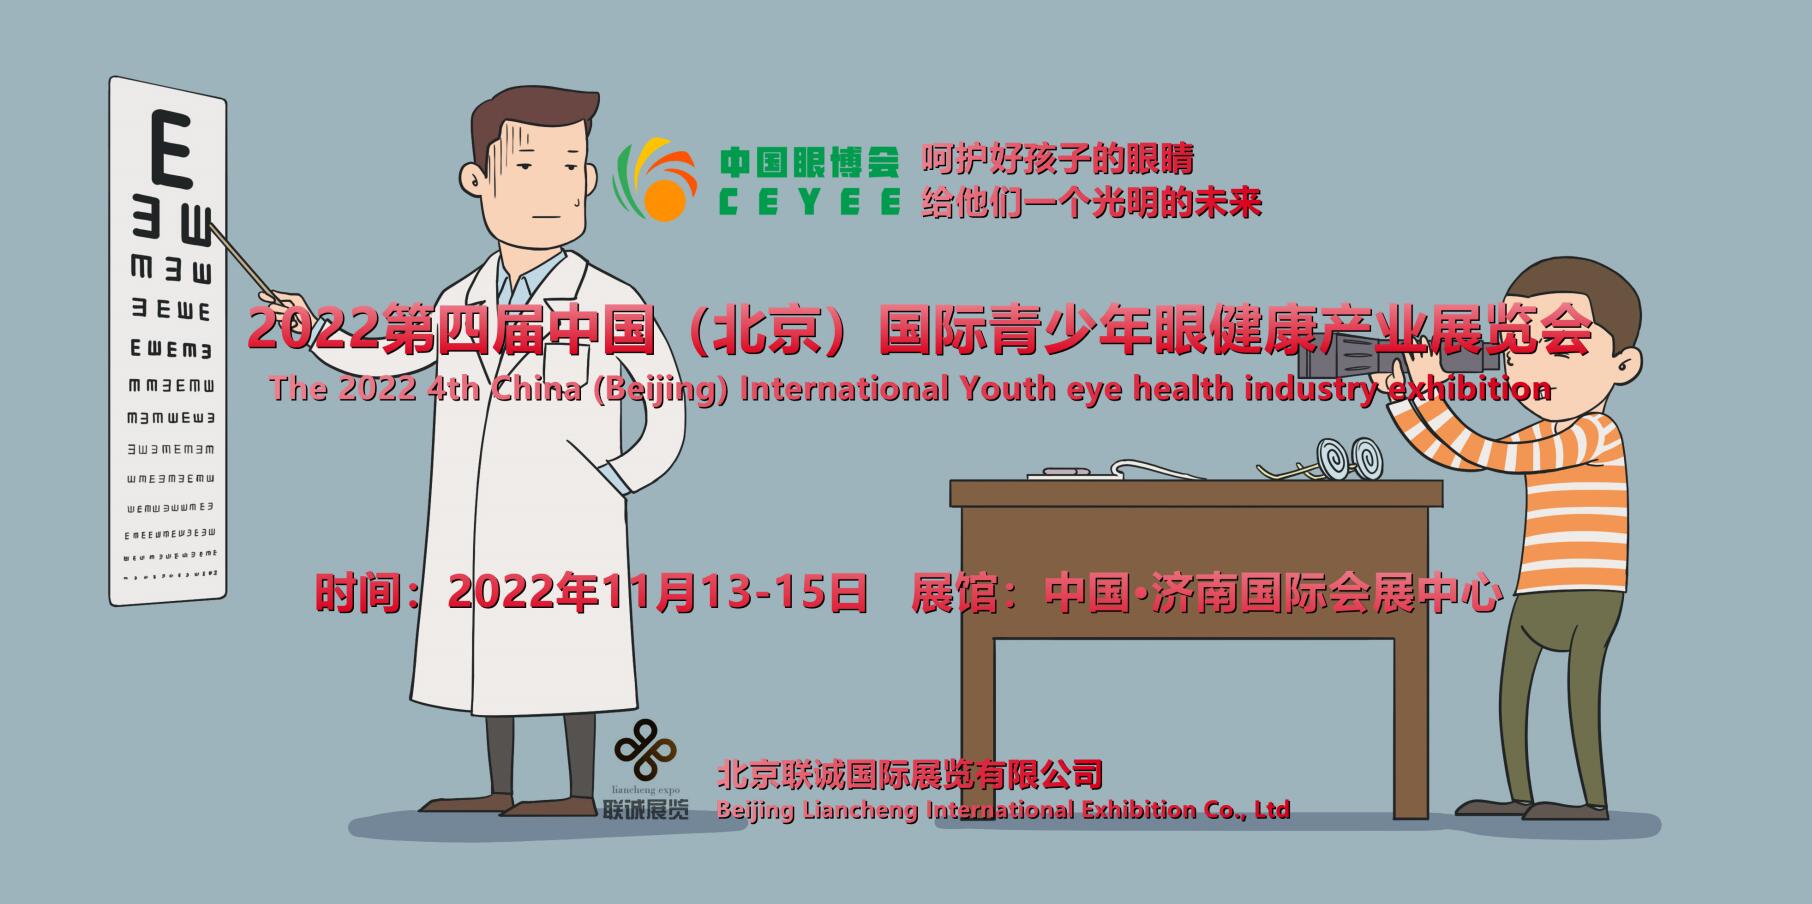 11月招商季2022中国国际青少年眼健康产业展览会将举办